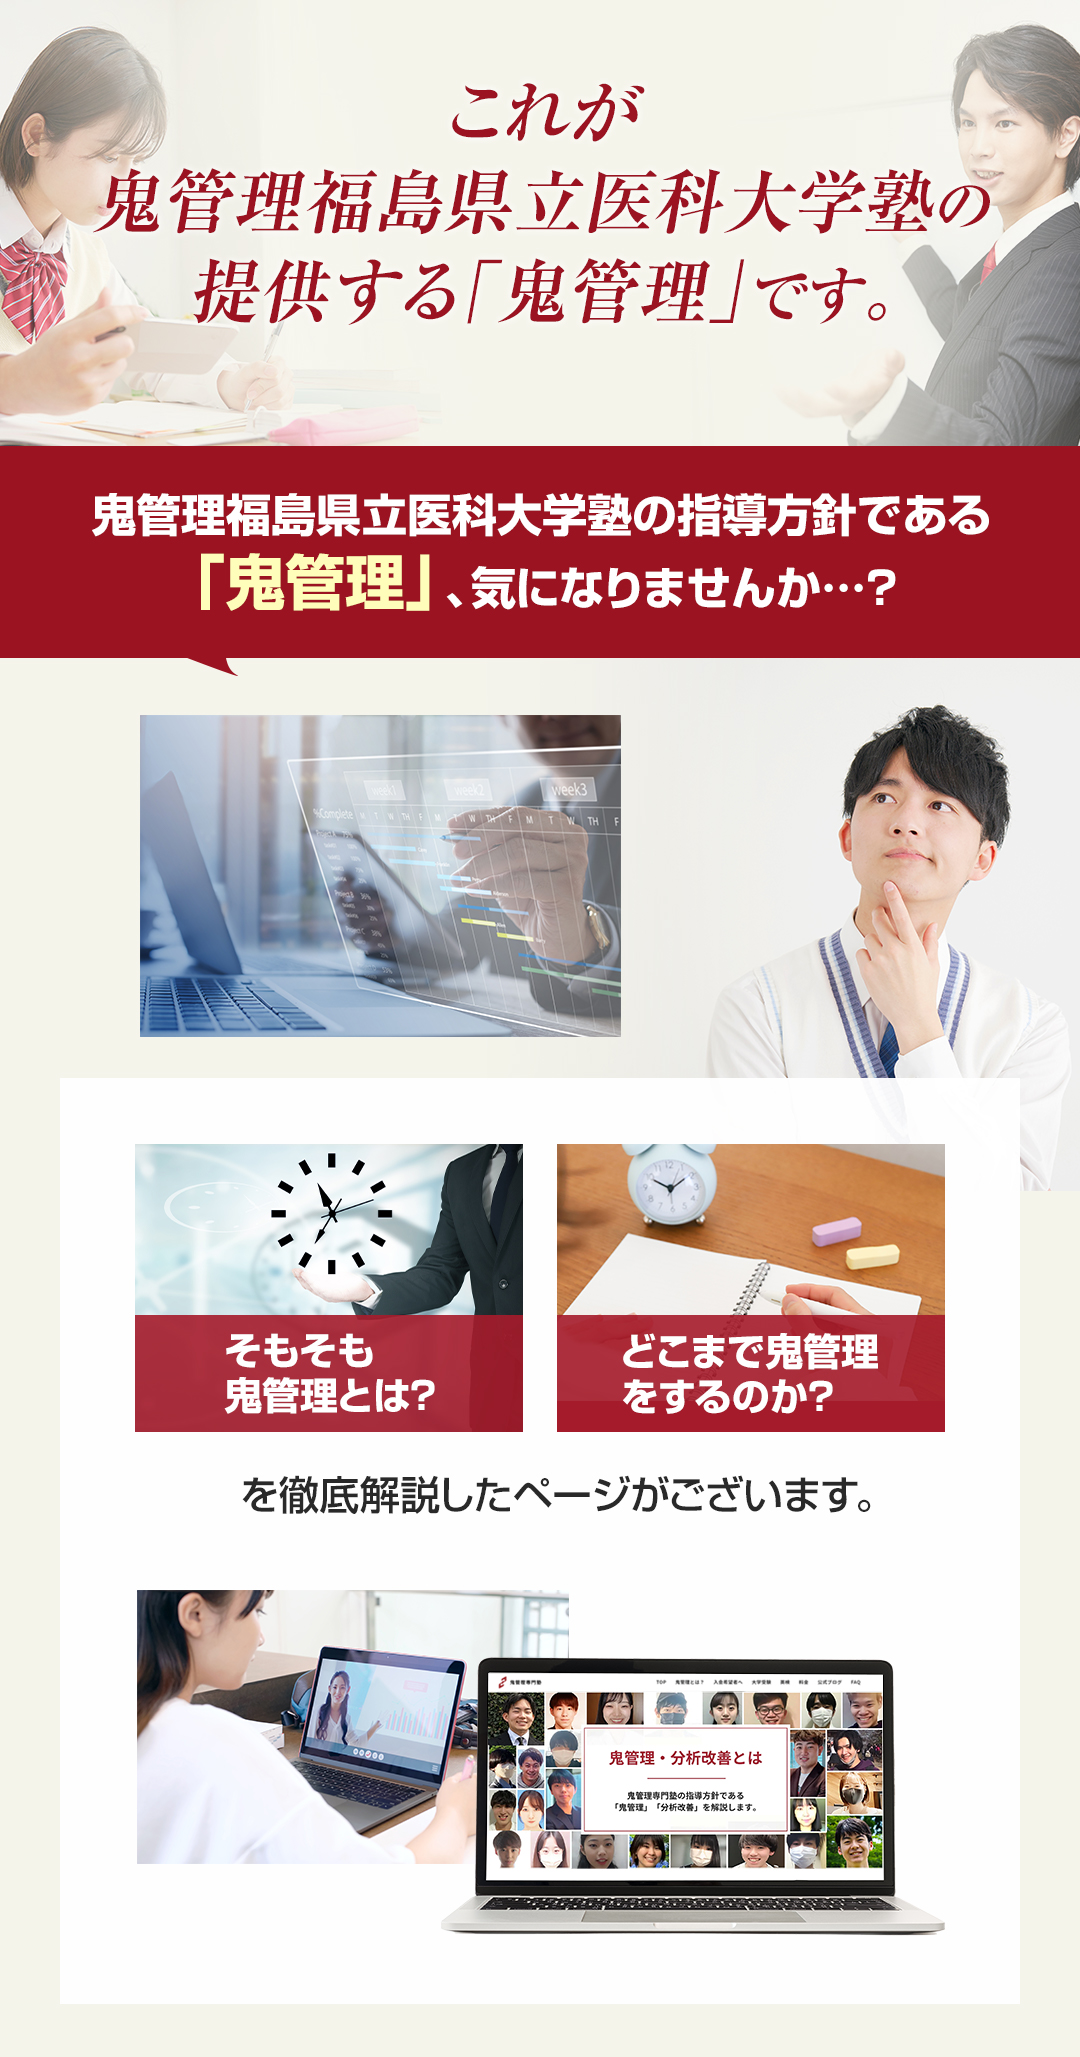 これが鬼管理福島県立医科大学塾の提供する「鬼管理」です